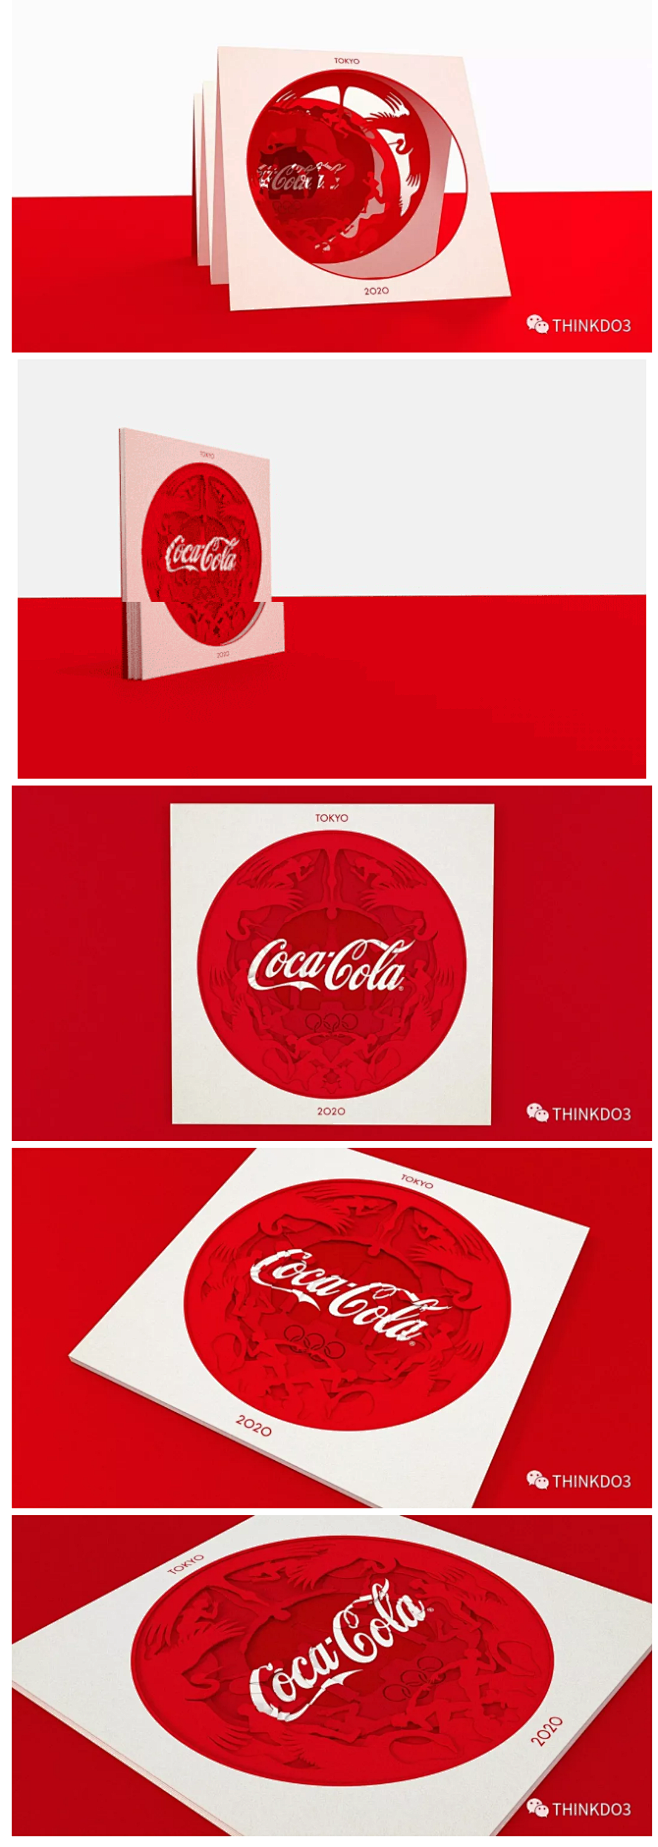 可口可乐东京2020奥运会邀请卡设计

...